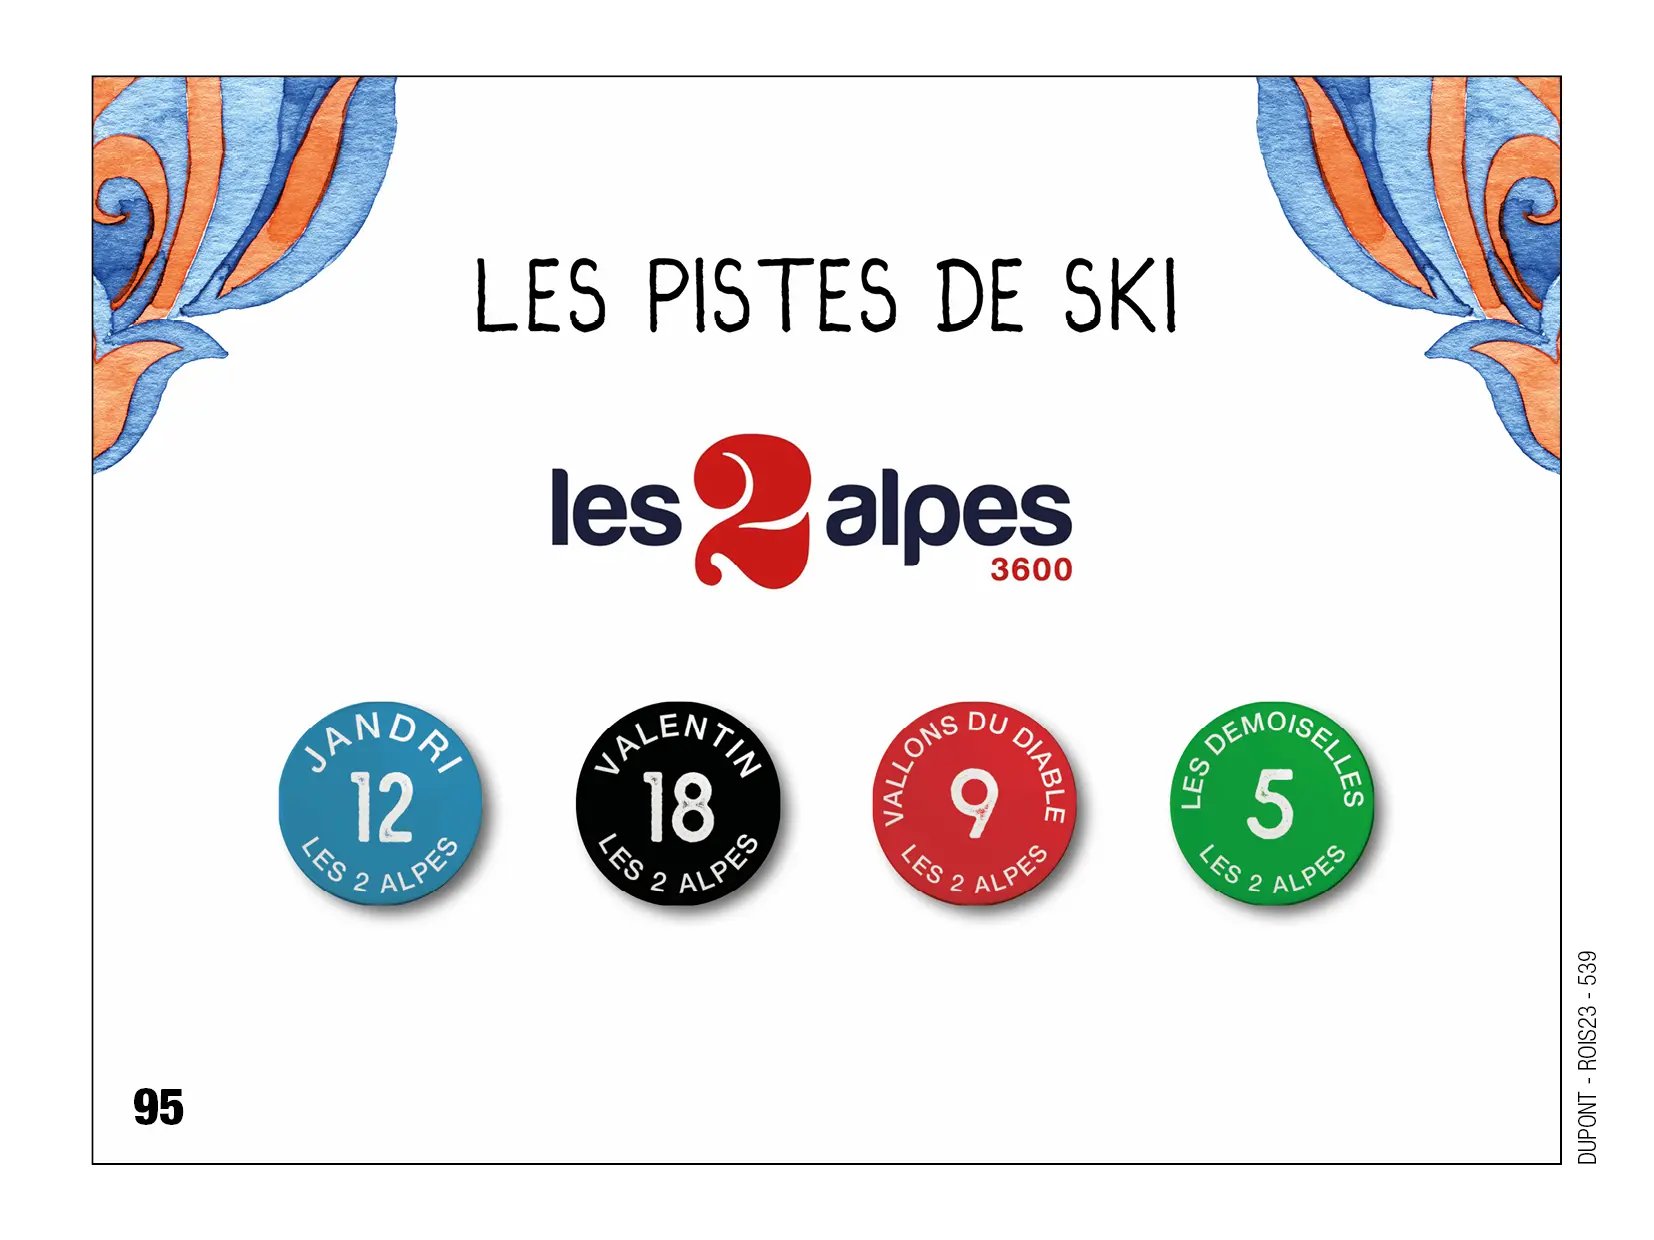 Fèves personnalisées piste de ski les 2 alpes